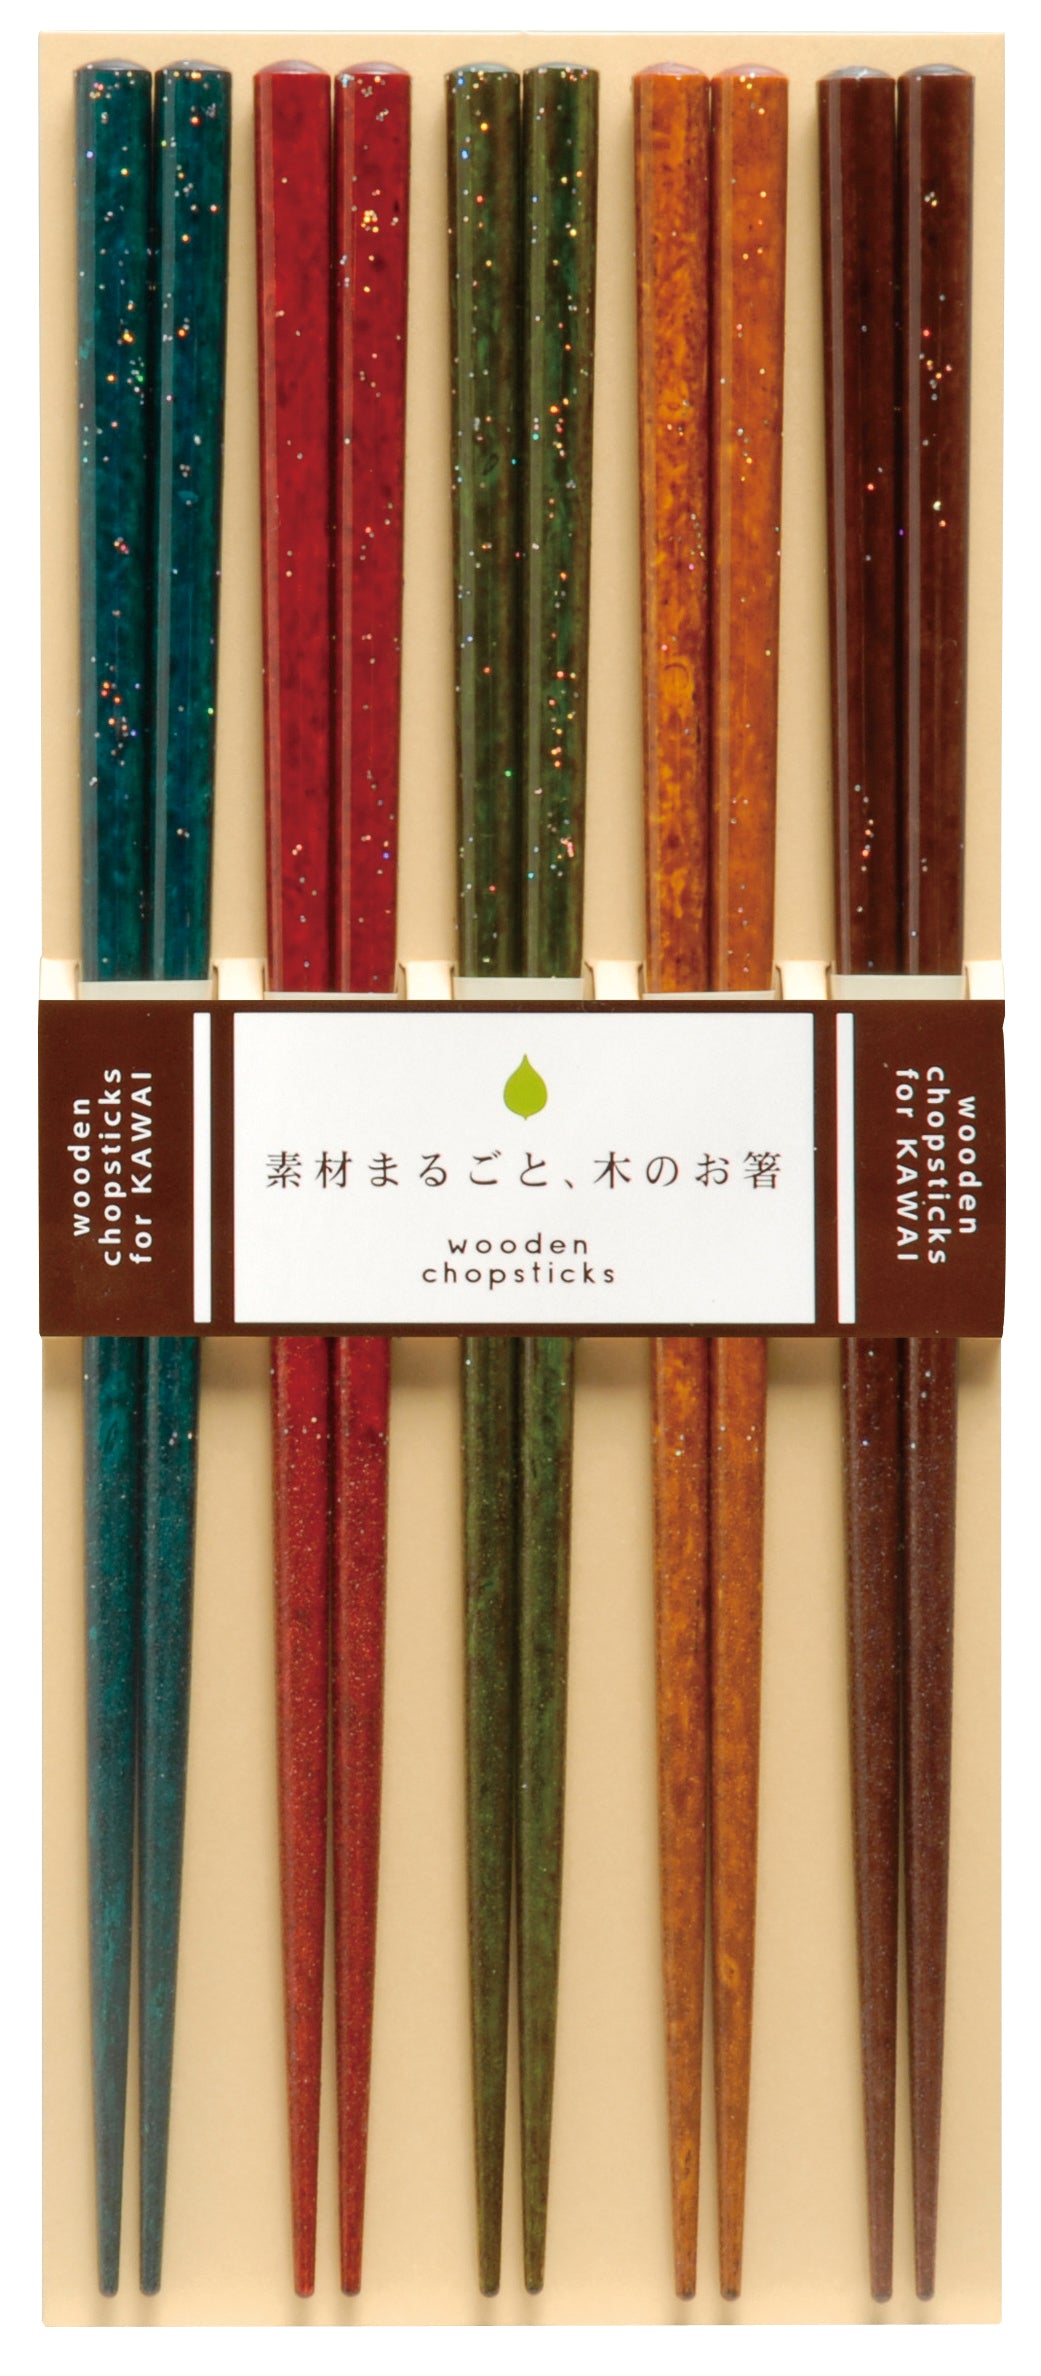 Kawai Wooden Chopsticks Gift Set